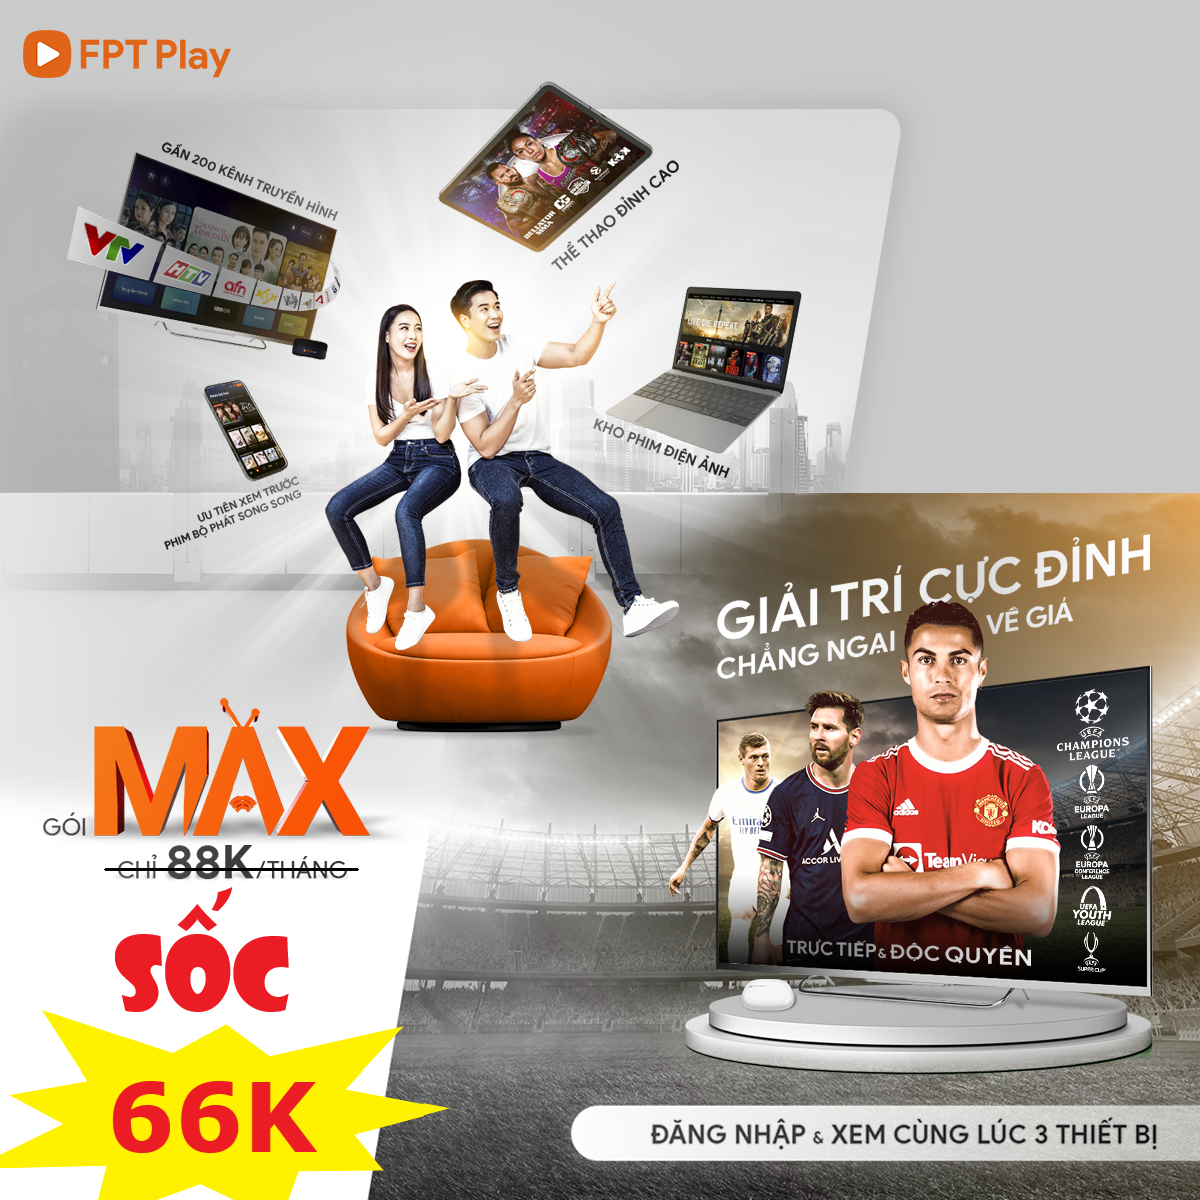 Gói Max FPT Play dịch vụ xem truyền hình chỉ với 88.000đ/tháng 12